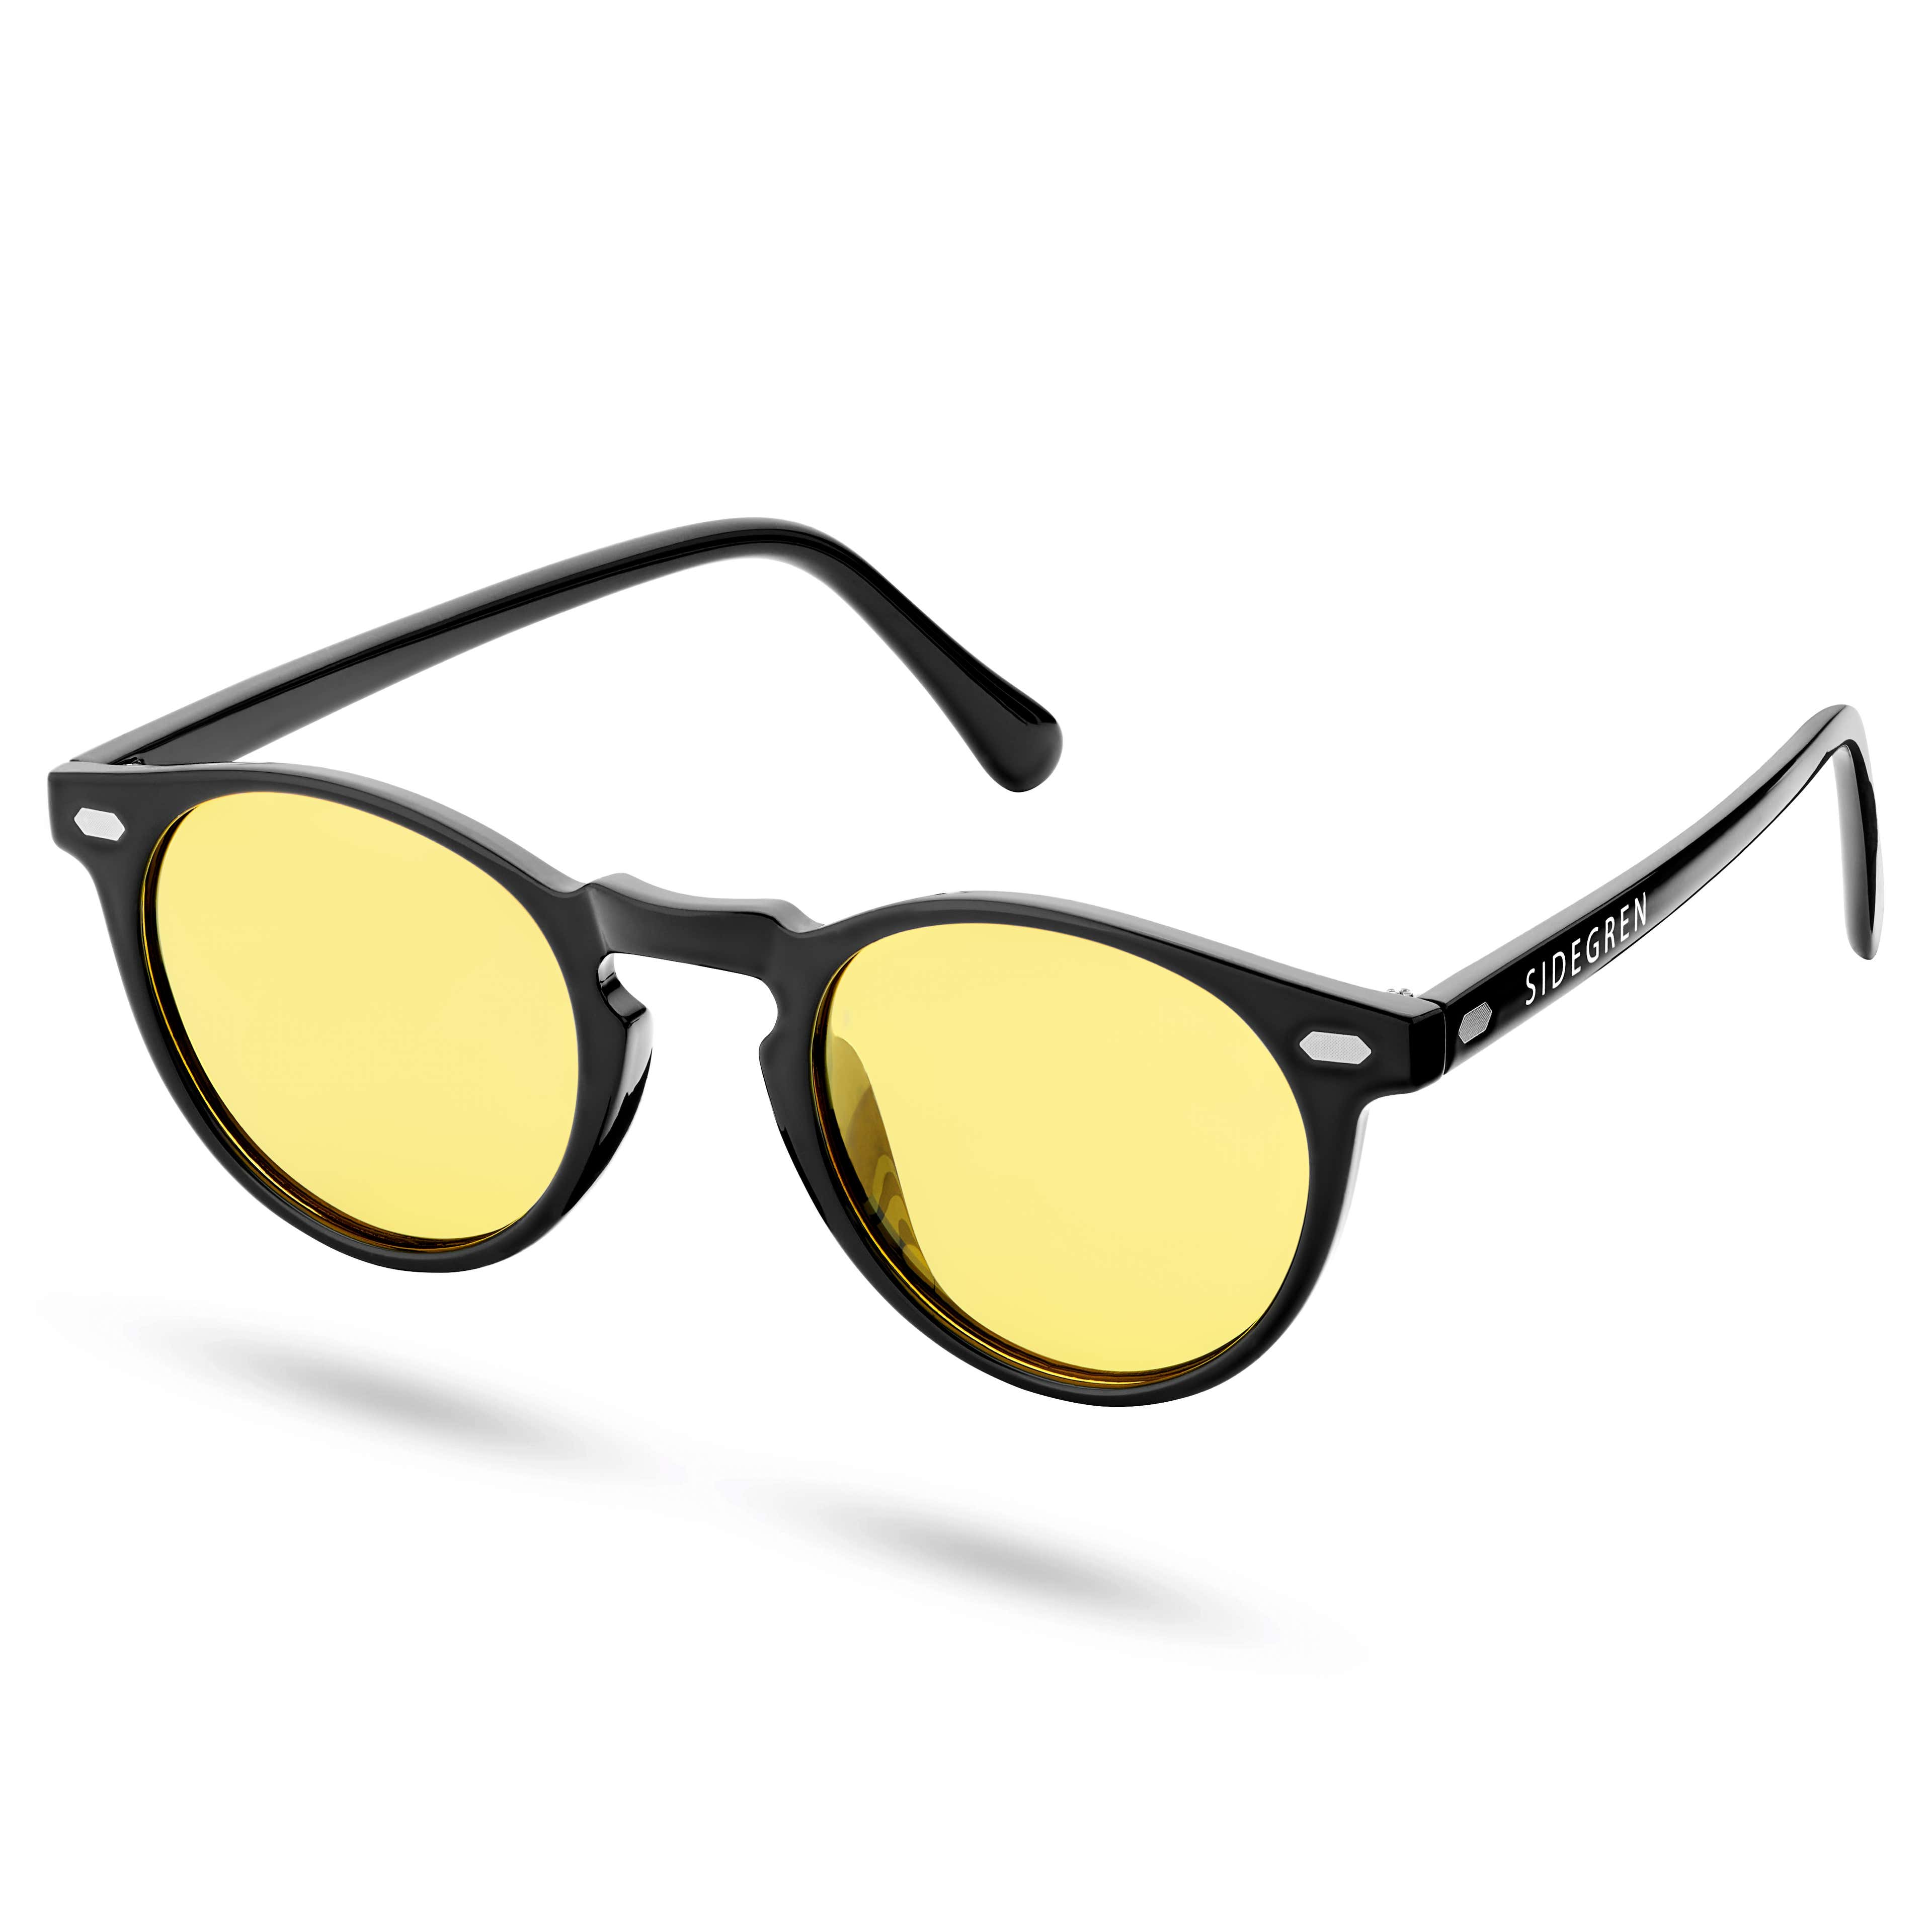 Retro runde schwarze und gelbe polarisierte Sonnenbrille